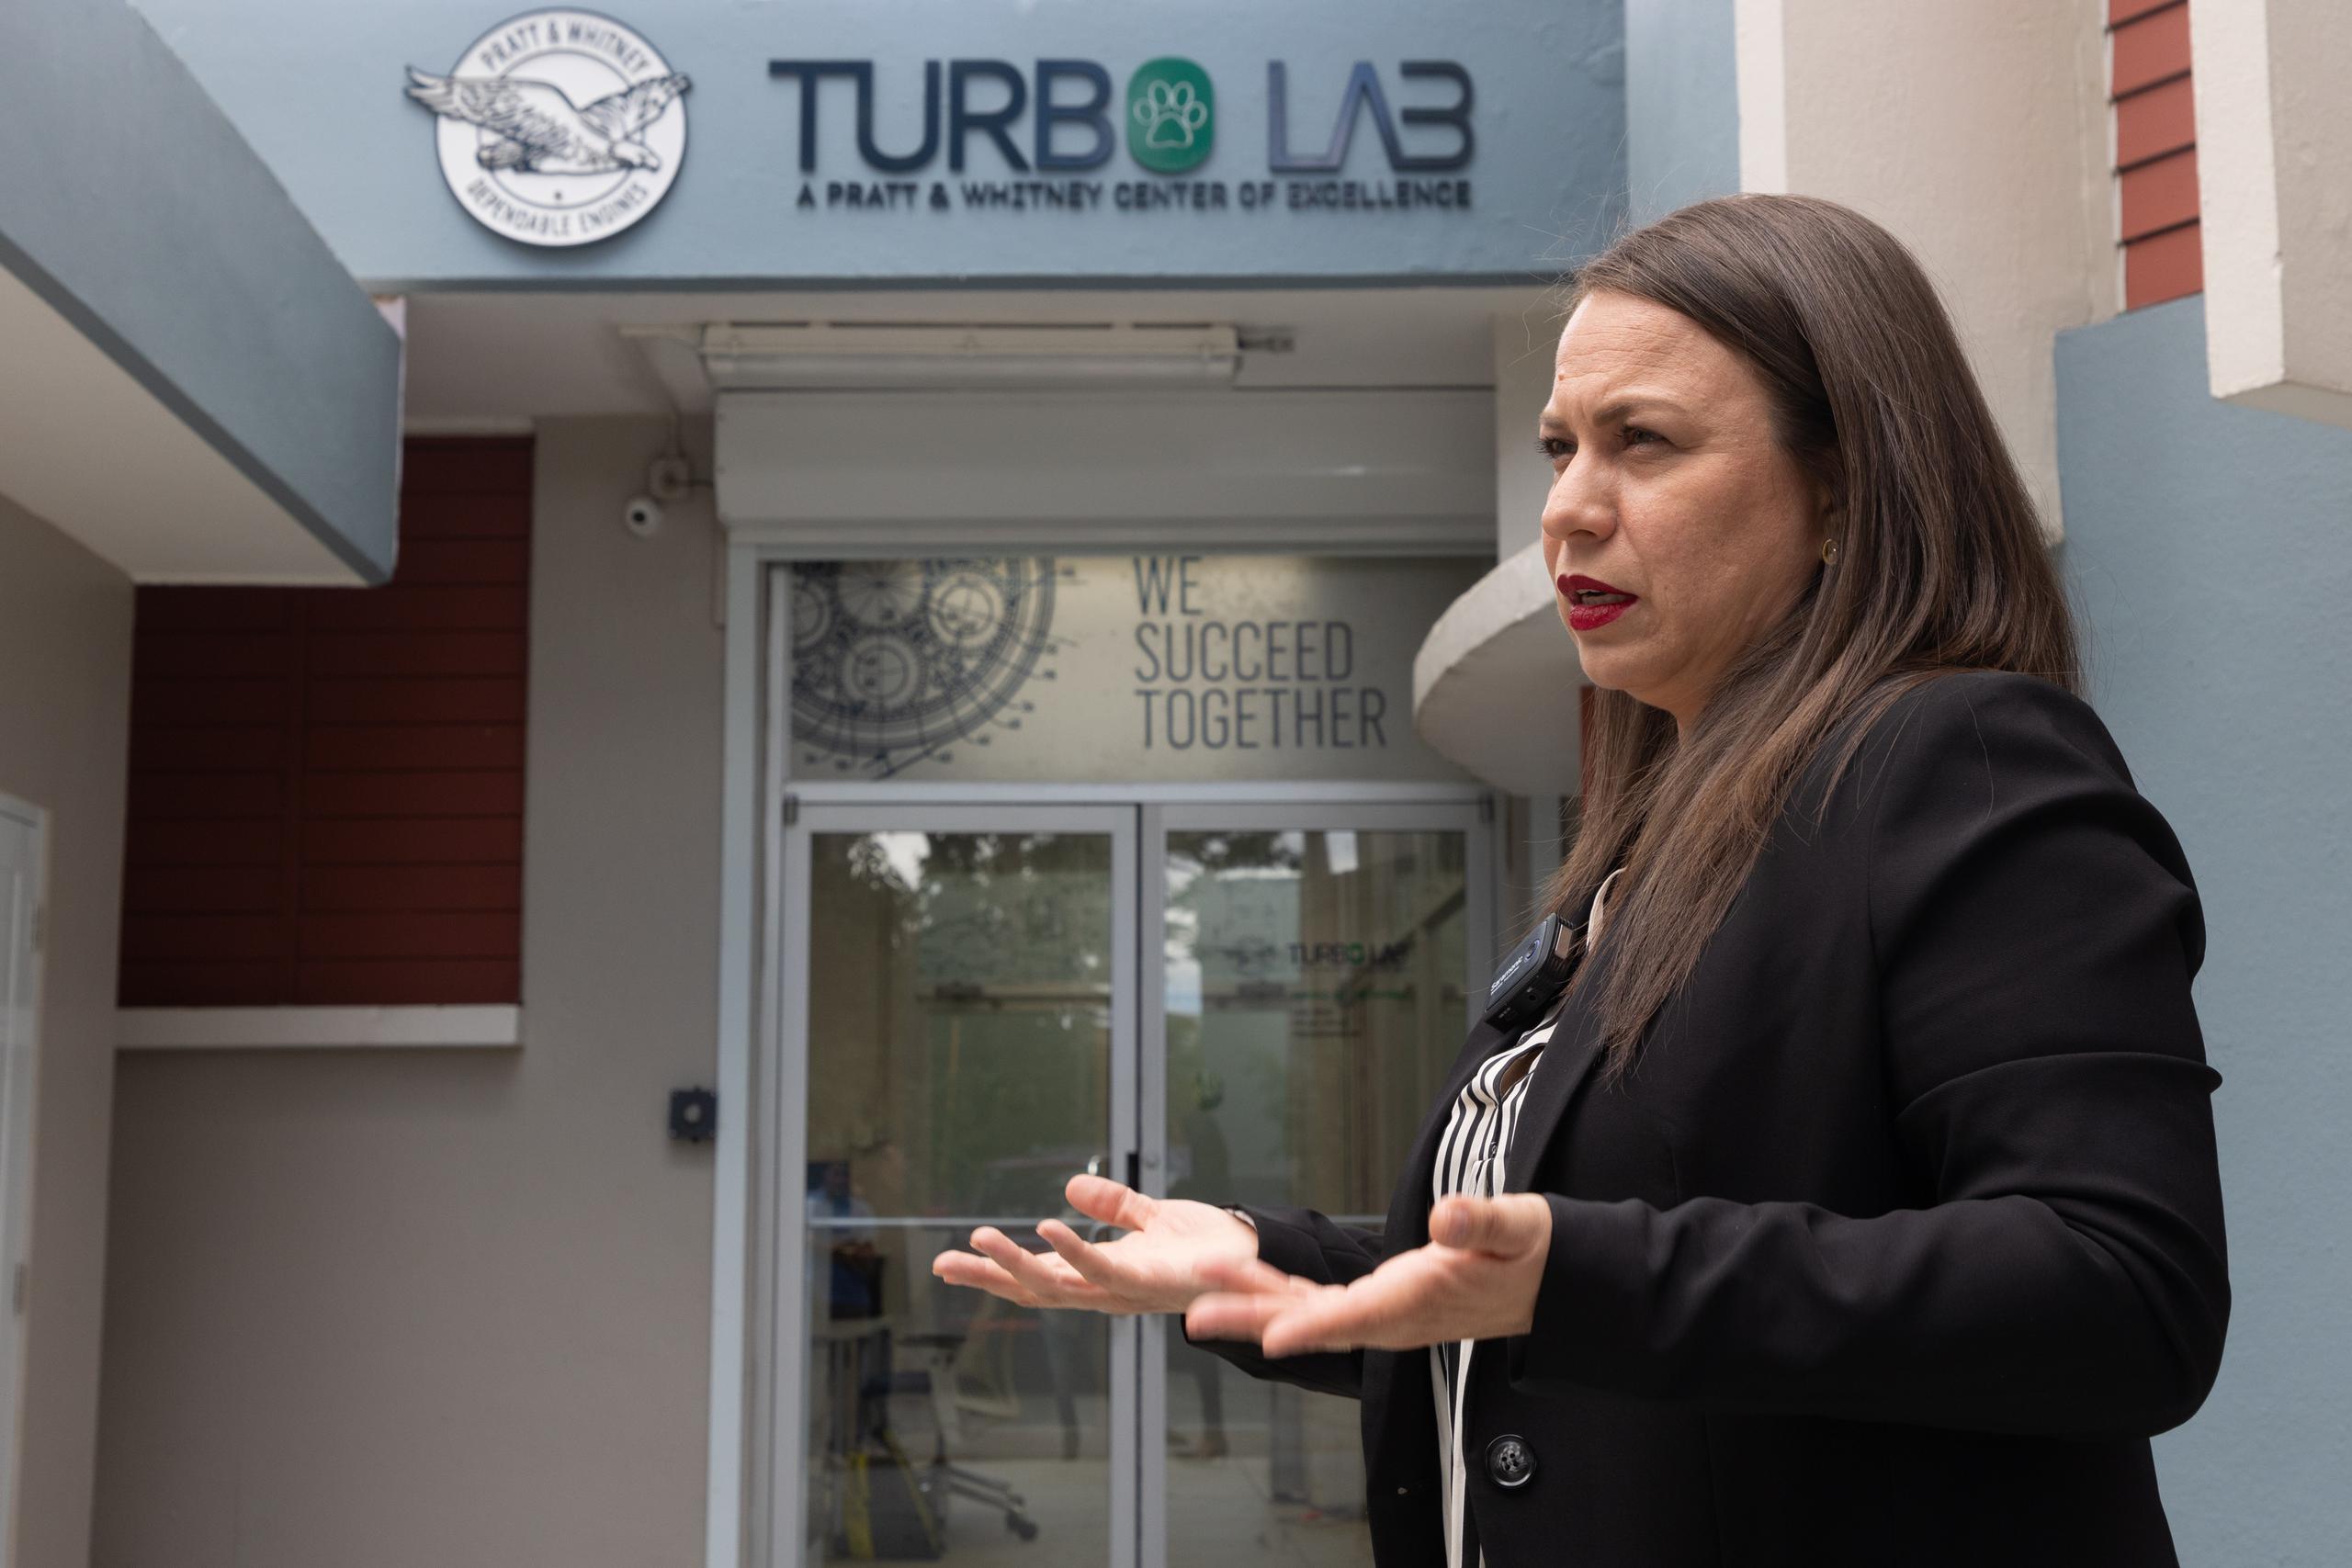 El Turbo Lab se habilitó gracias a una donación de la empresa Pratt & Whitney. Aquí la profesora Sheila Torres.